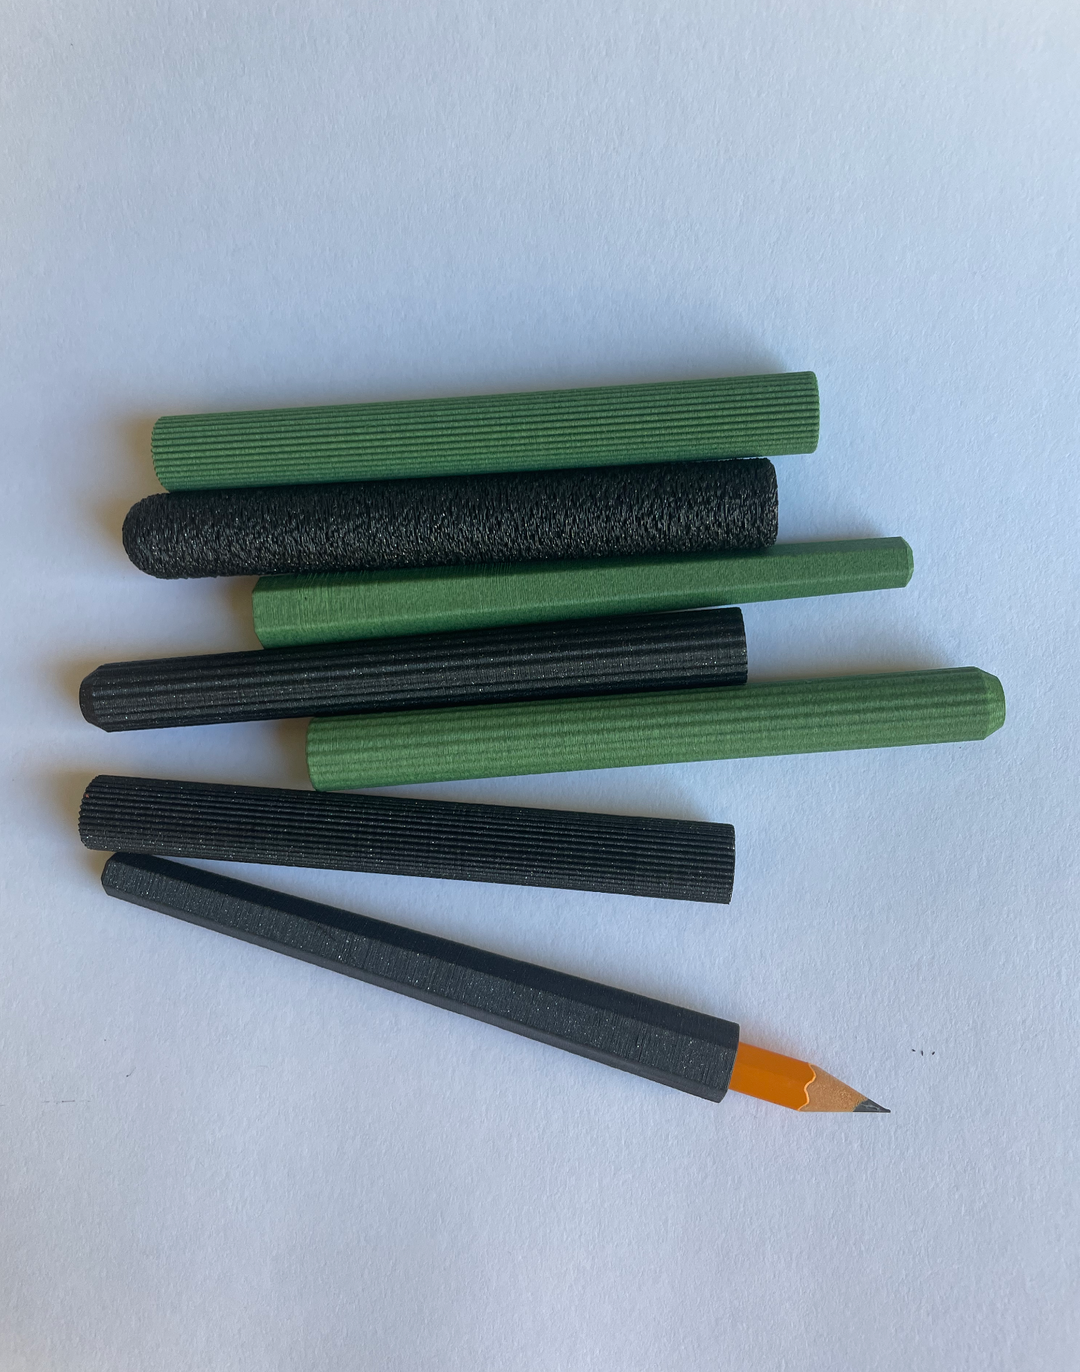 3D Printed Pencil Extenders